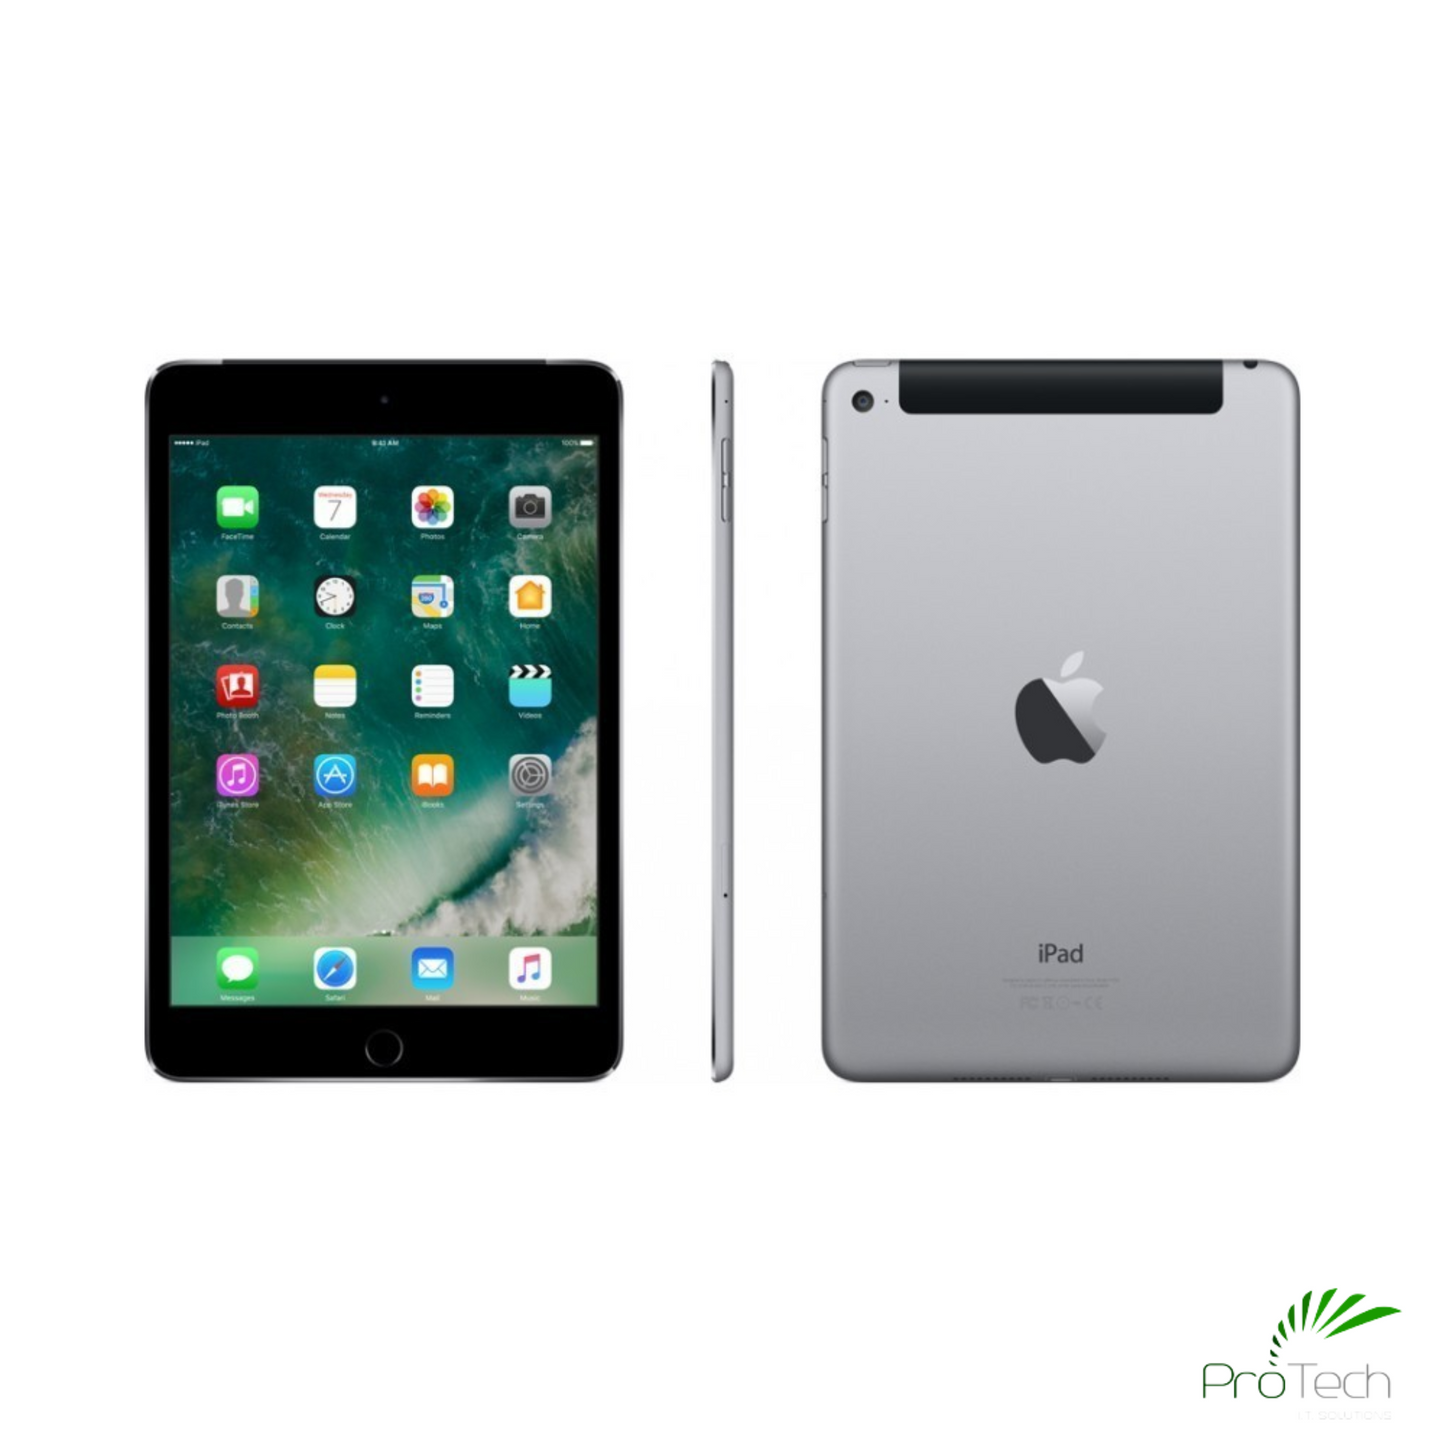 Apple iPad Mini 4 | Space Grey | Wi-Fi | 128GB